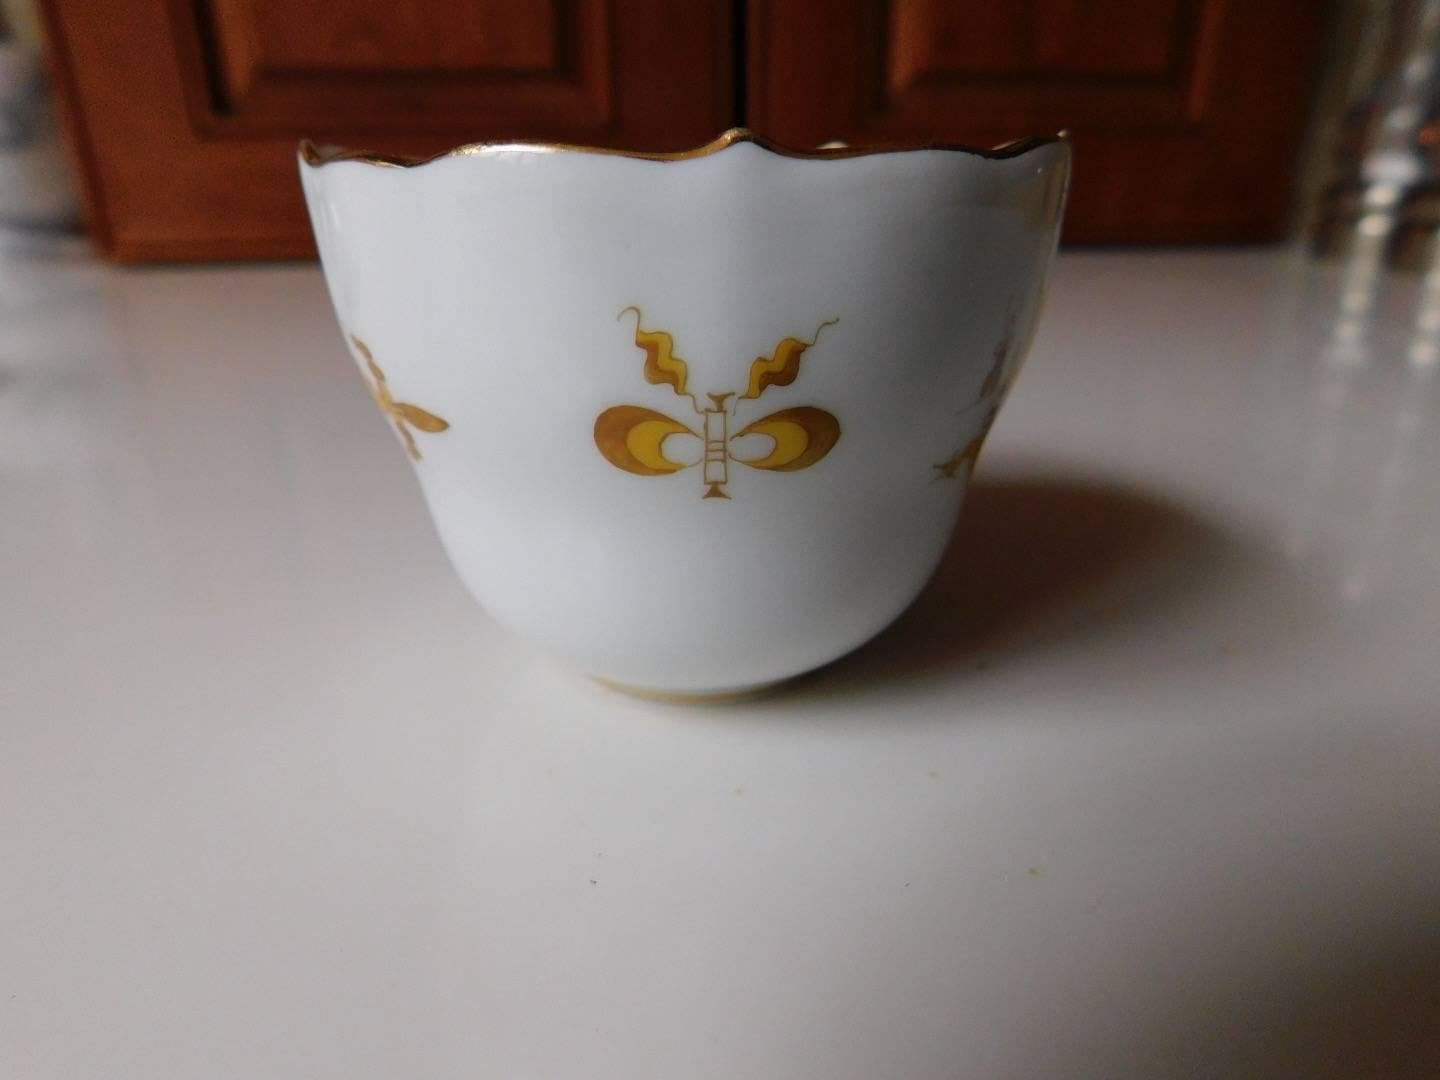 German Meissen Porcelain Golden Dragon Teacup and Saucer